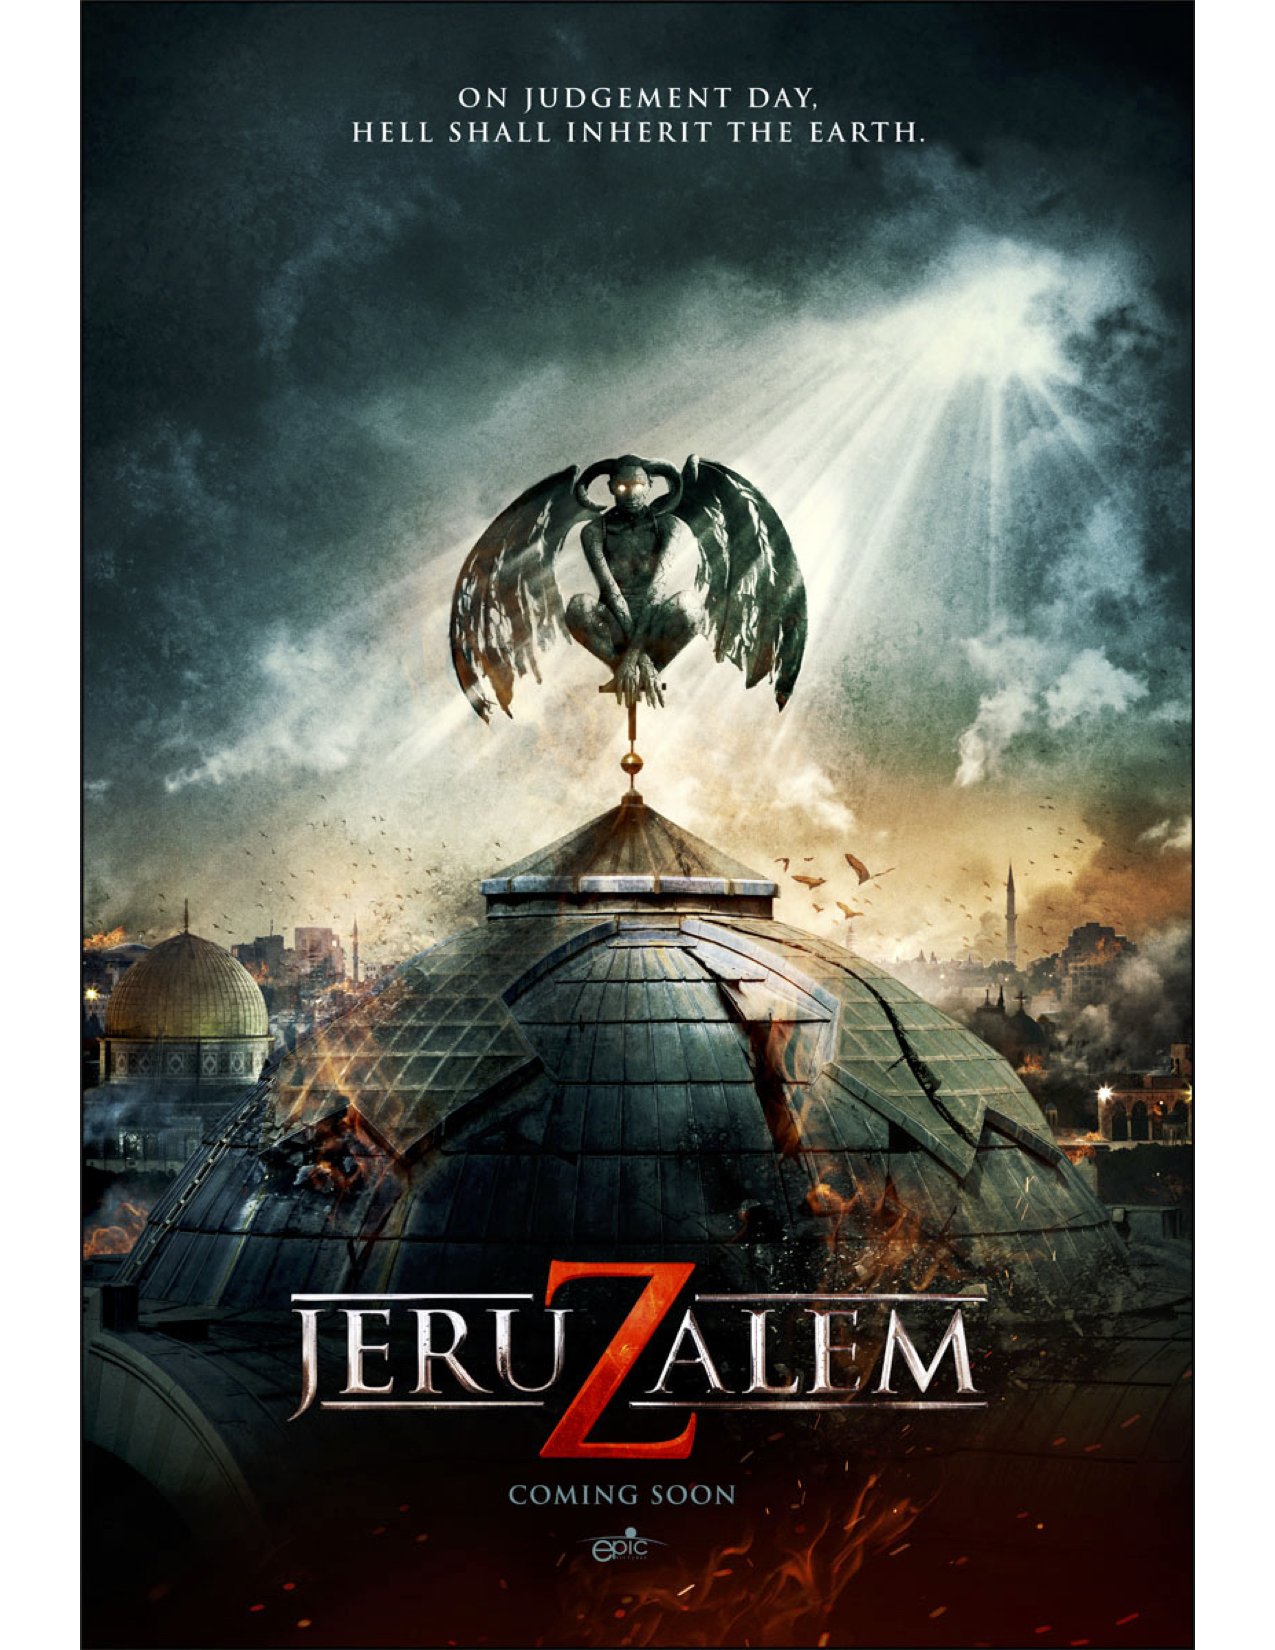 Poster of the movie Jeruzalem